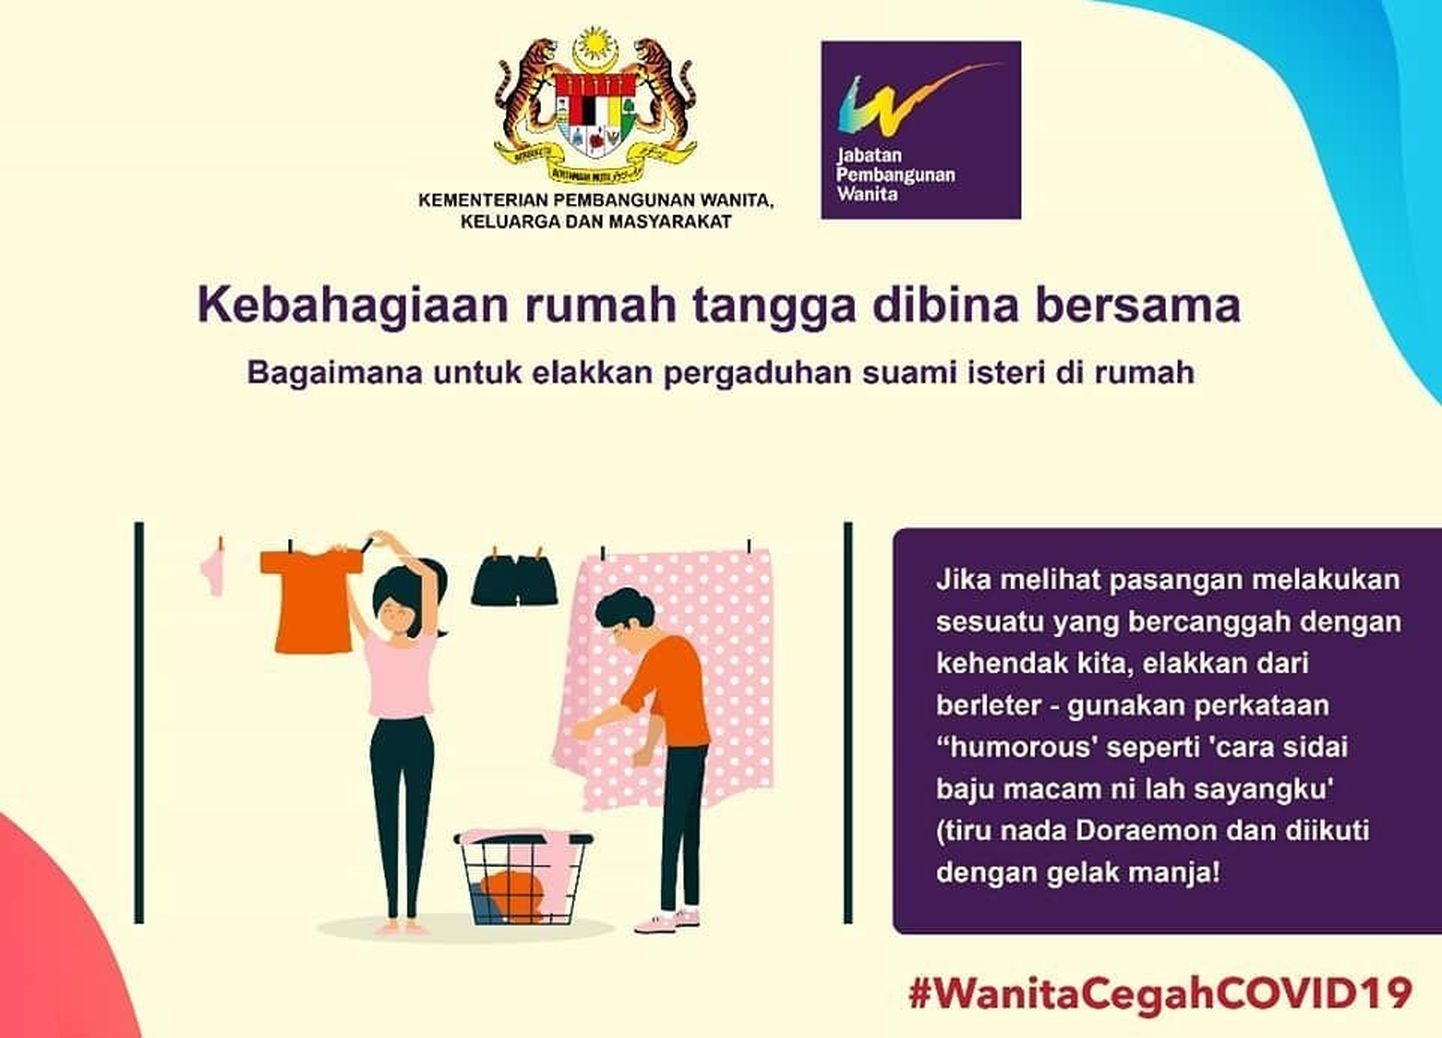 Malaisias tabasid kriitikanooled naisteministeeriumi kampaaniat, mis muu hulgas kutsus naisi üles koroonaviiruse puhangu ajal meeste kallal mitte näägutama.